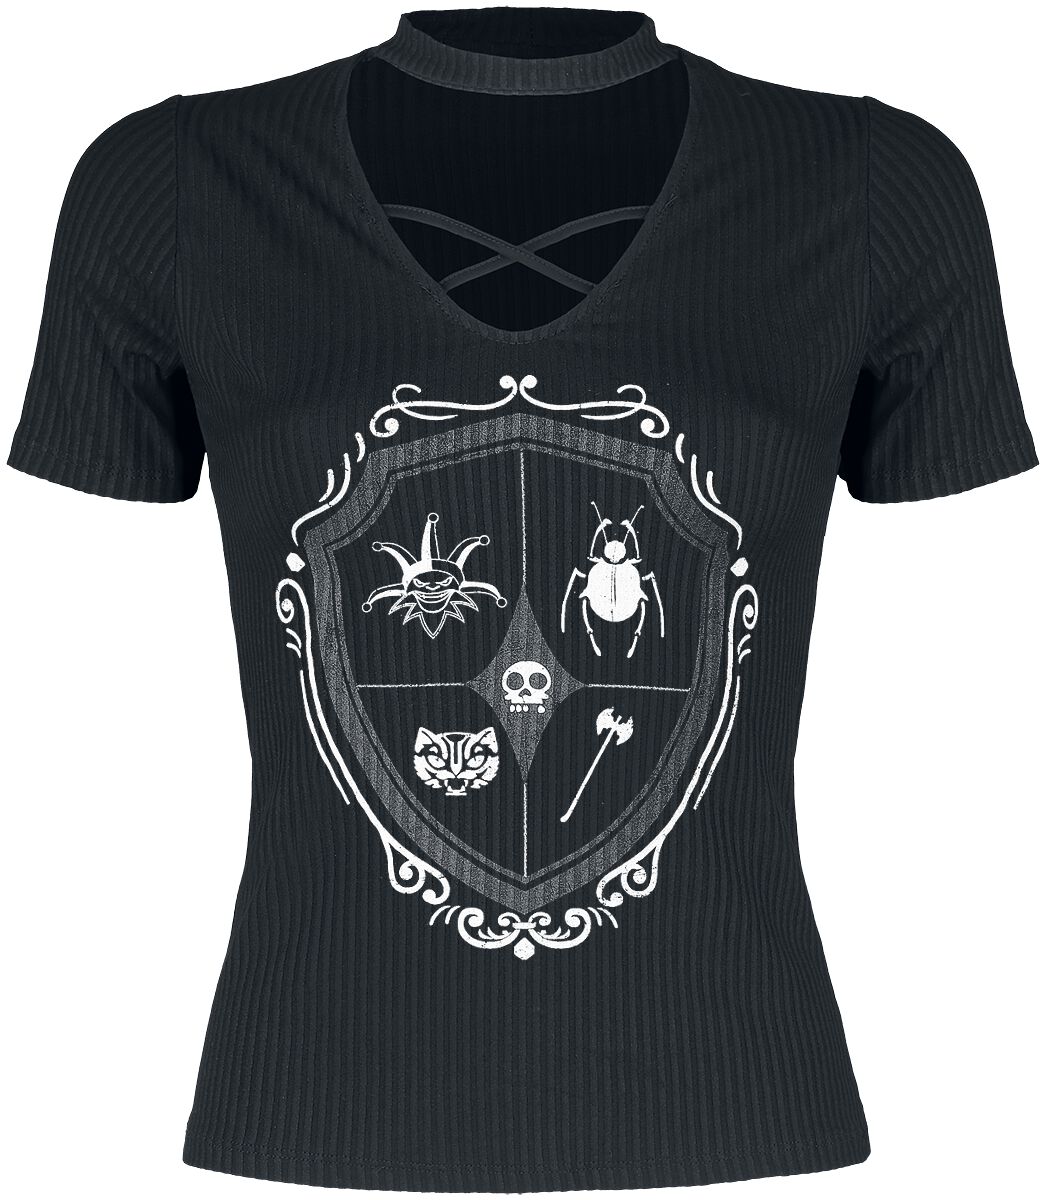 T-Shirt Manches courtes de Wednesday - Crest - S à XXL - pour Femme - noir